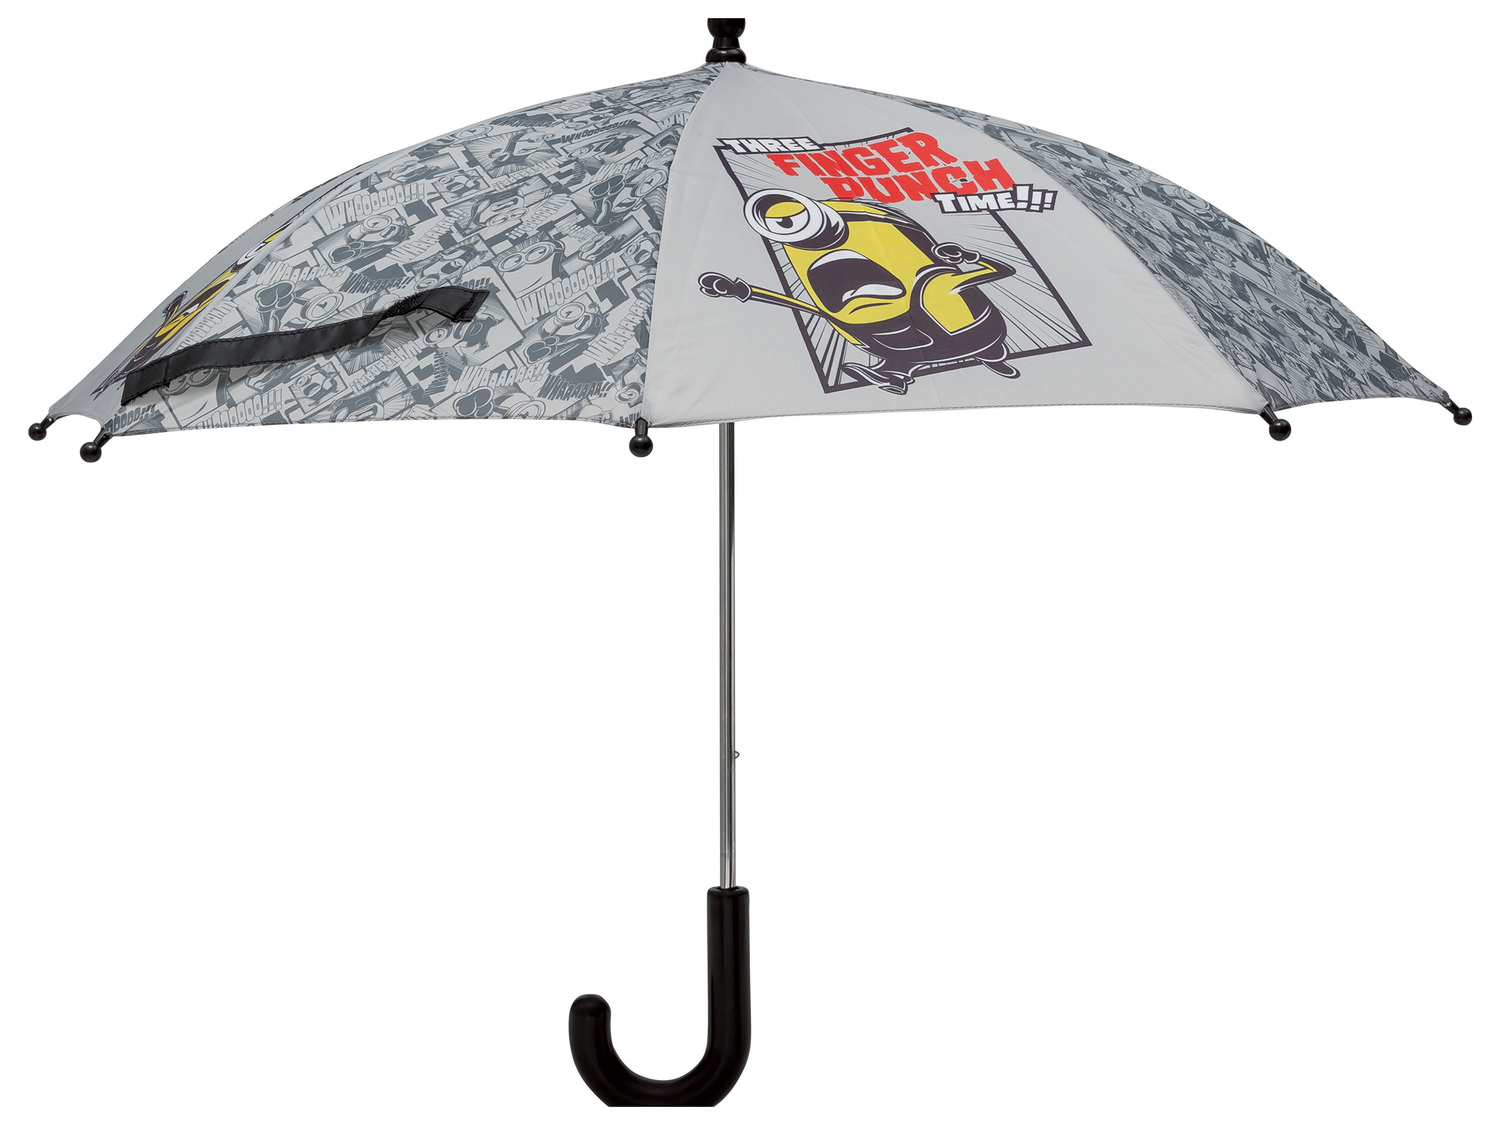 Parapluie enfant , le prix 3.99 &#8364; 
- Hauteur : env. 54,5 cm
- 2 coloris ...